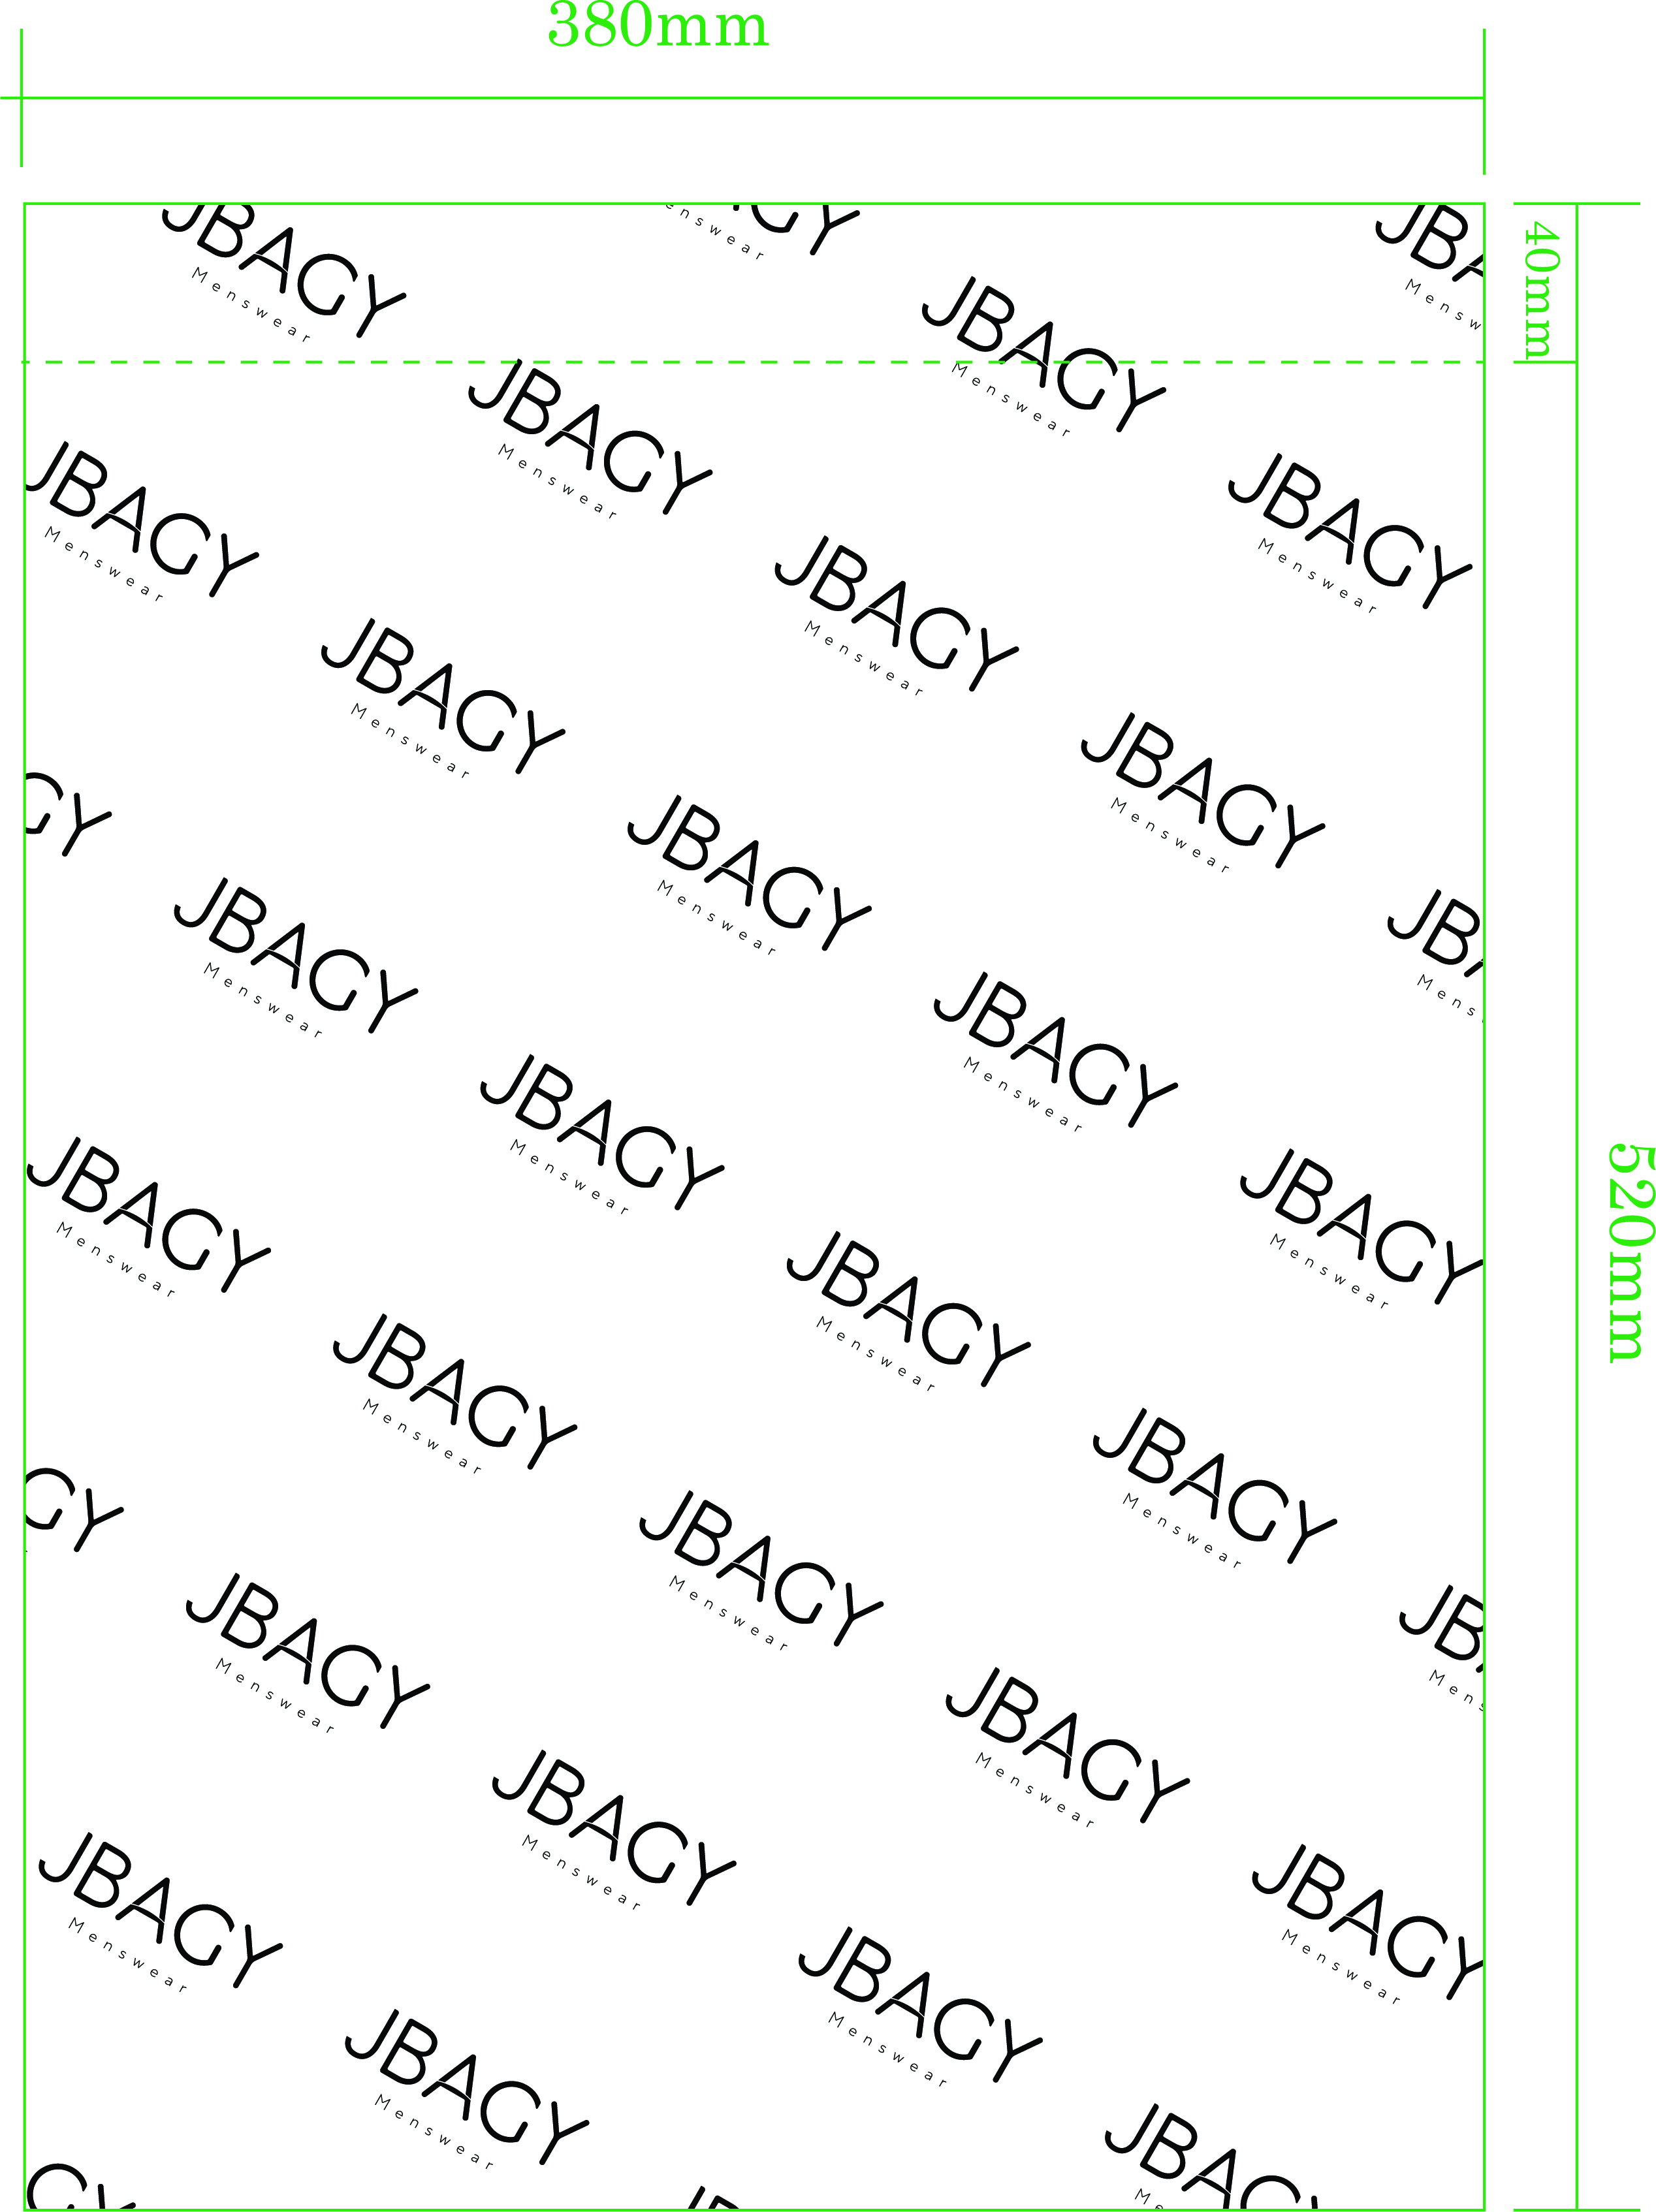 thiết kế túi gói hàng in logo JBAGY